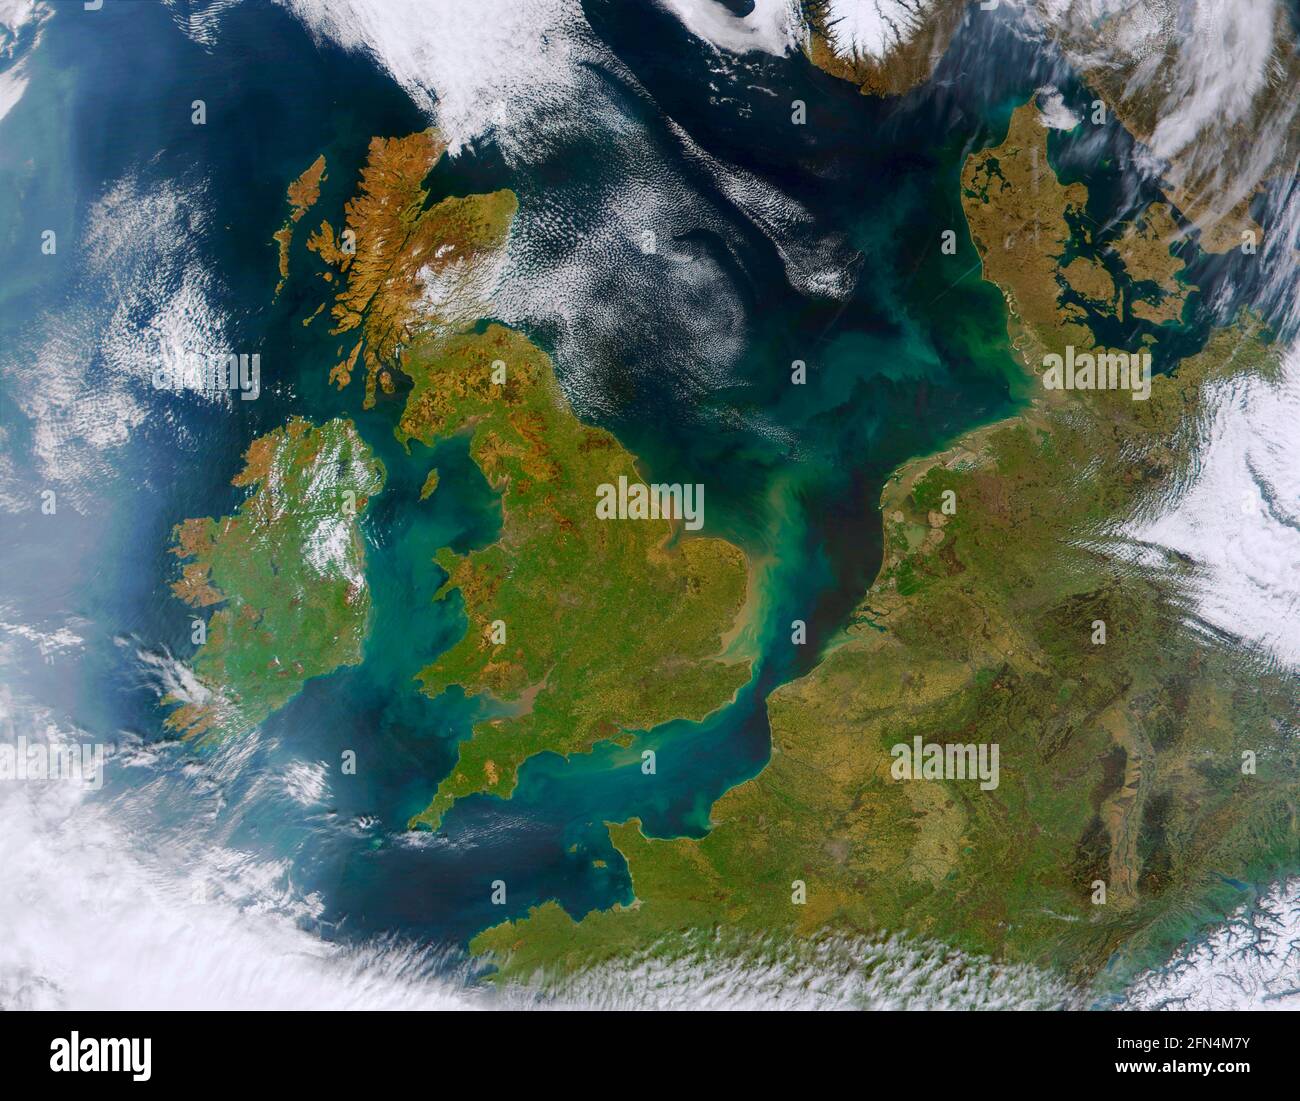 WESTEUROPA - 06. April 2002 - Diese True-Color-MODIS-Abbildung zeigt eine seltene, relativ klare Ansicht Westeuropa. Sichtbare Länder sind: The United Kin Stockfoto